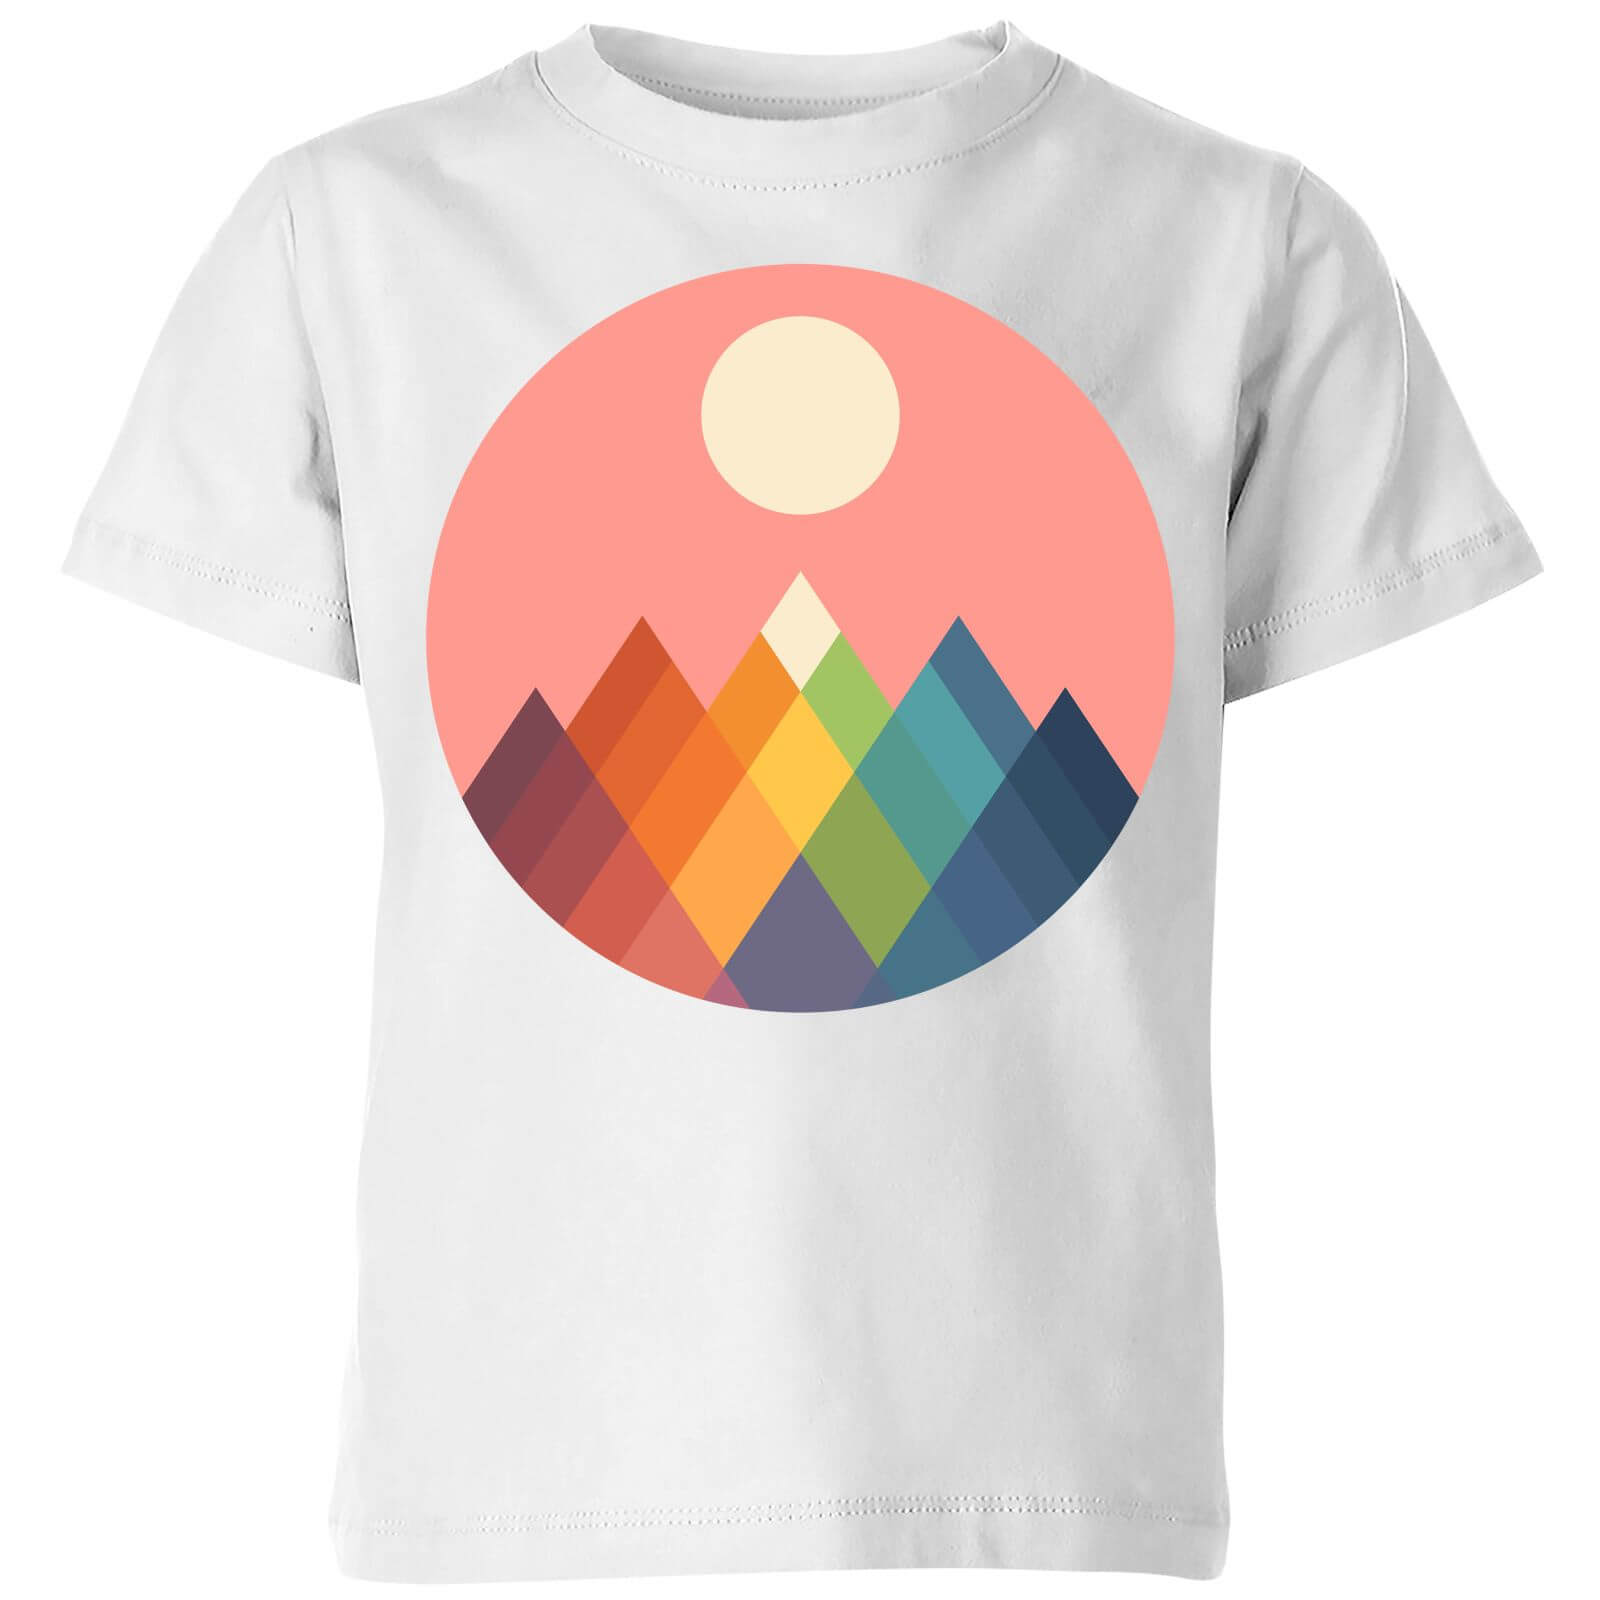 Andy Westface Rainbow Peak Kids' T-Shirt - White - 3-4 Years - White